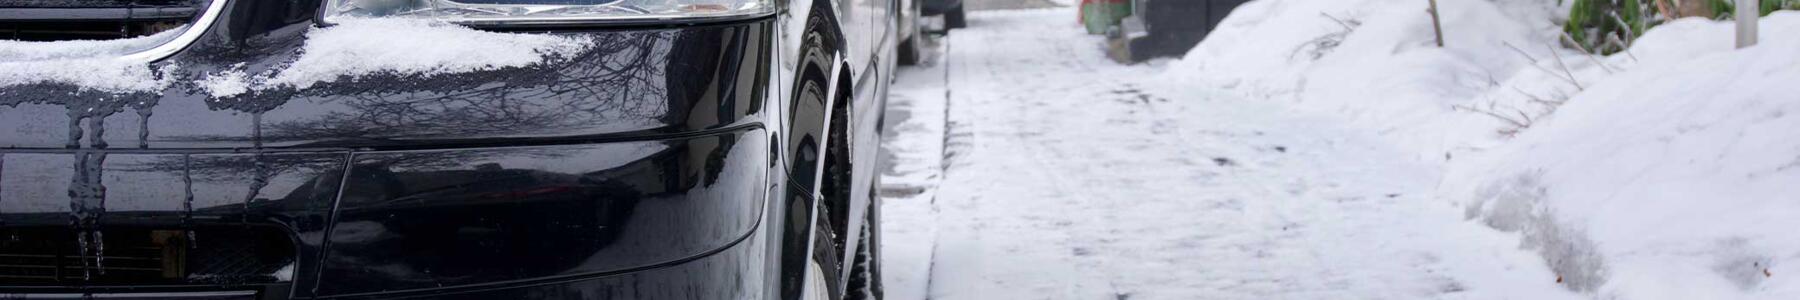 Urteil im Dieselskandal: Thermofenster im VW T6 ist illegal